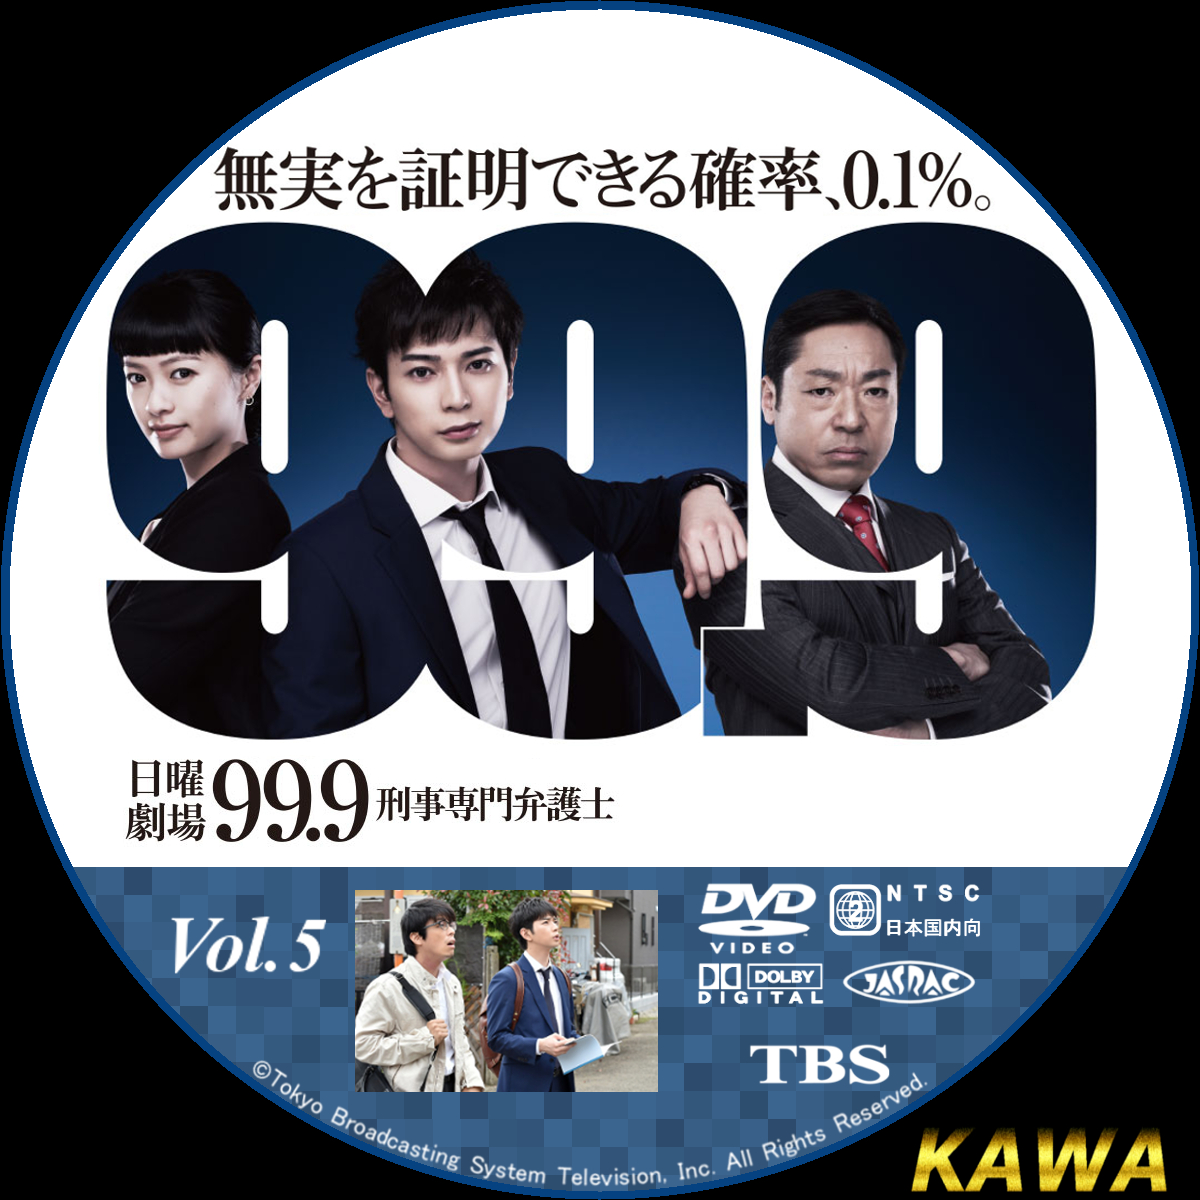 DVD 99.9 刑事専門弁護士 SEASON II 3巻 Vol.3 松本潤 - TVドラマ